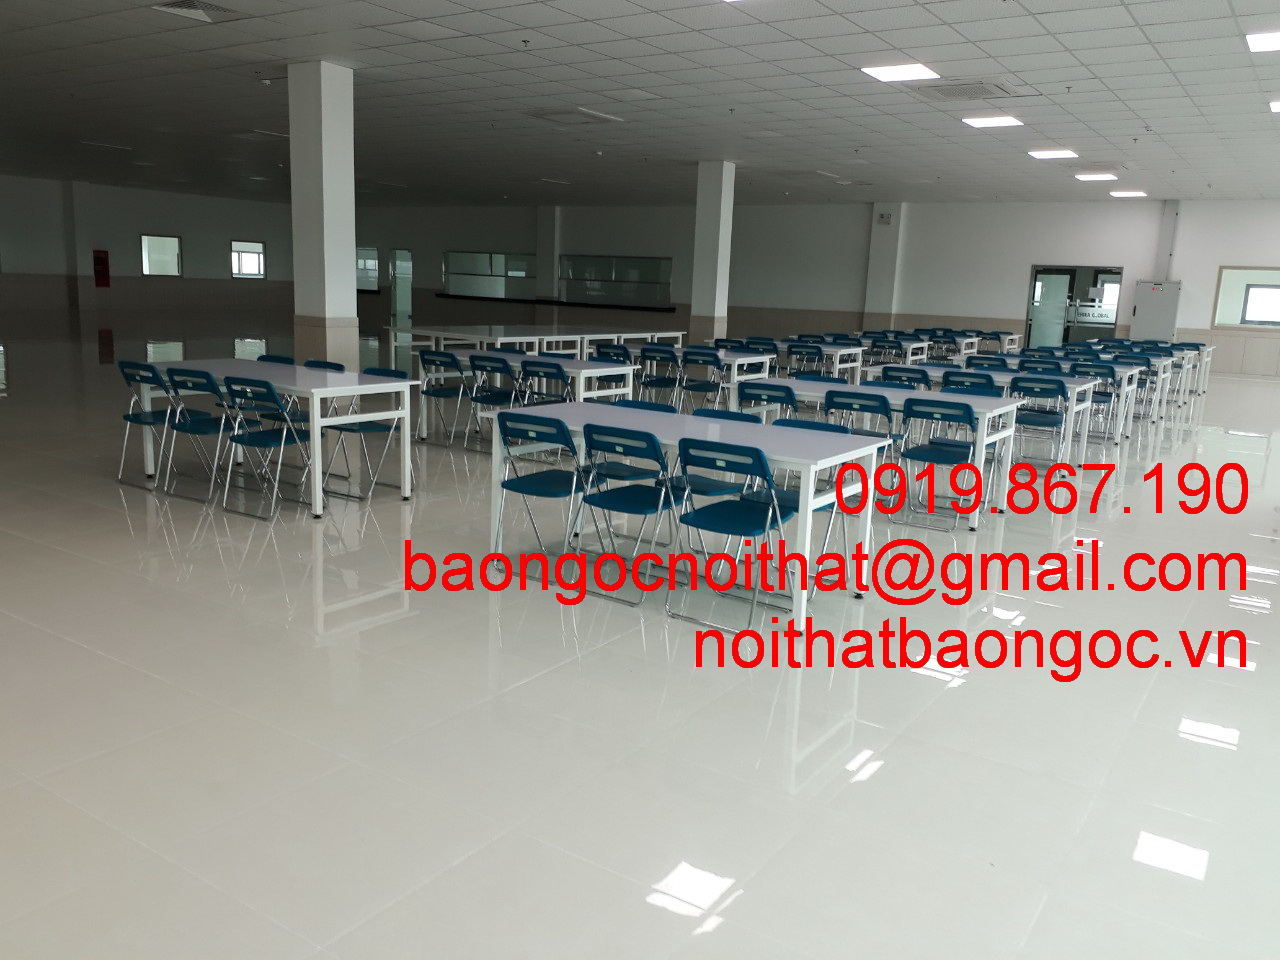 bàn ghế nhà ăn KCN Thuận Thành - Bắc Ninh